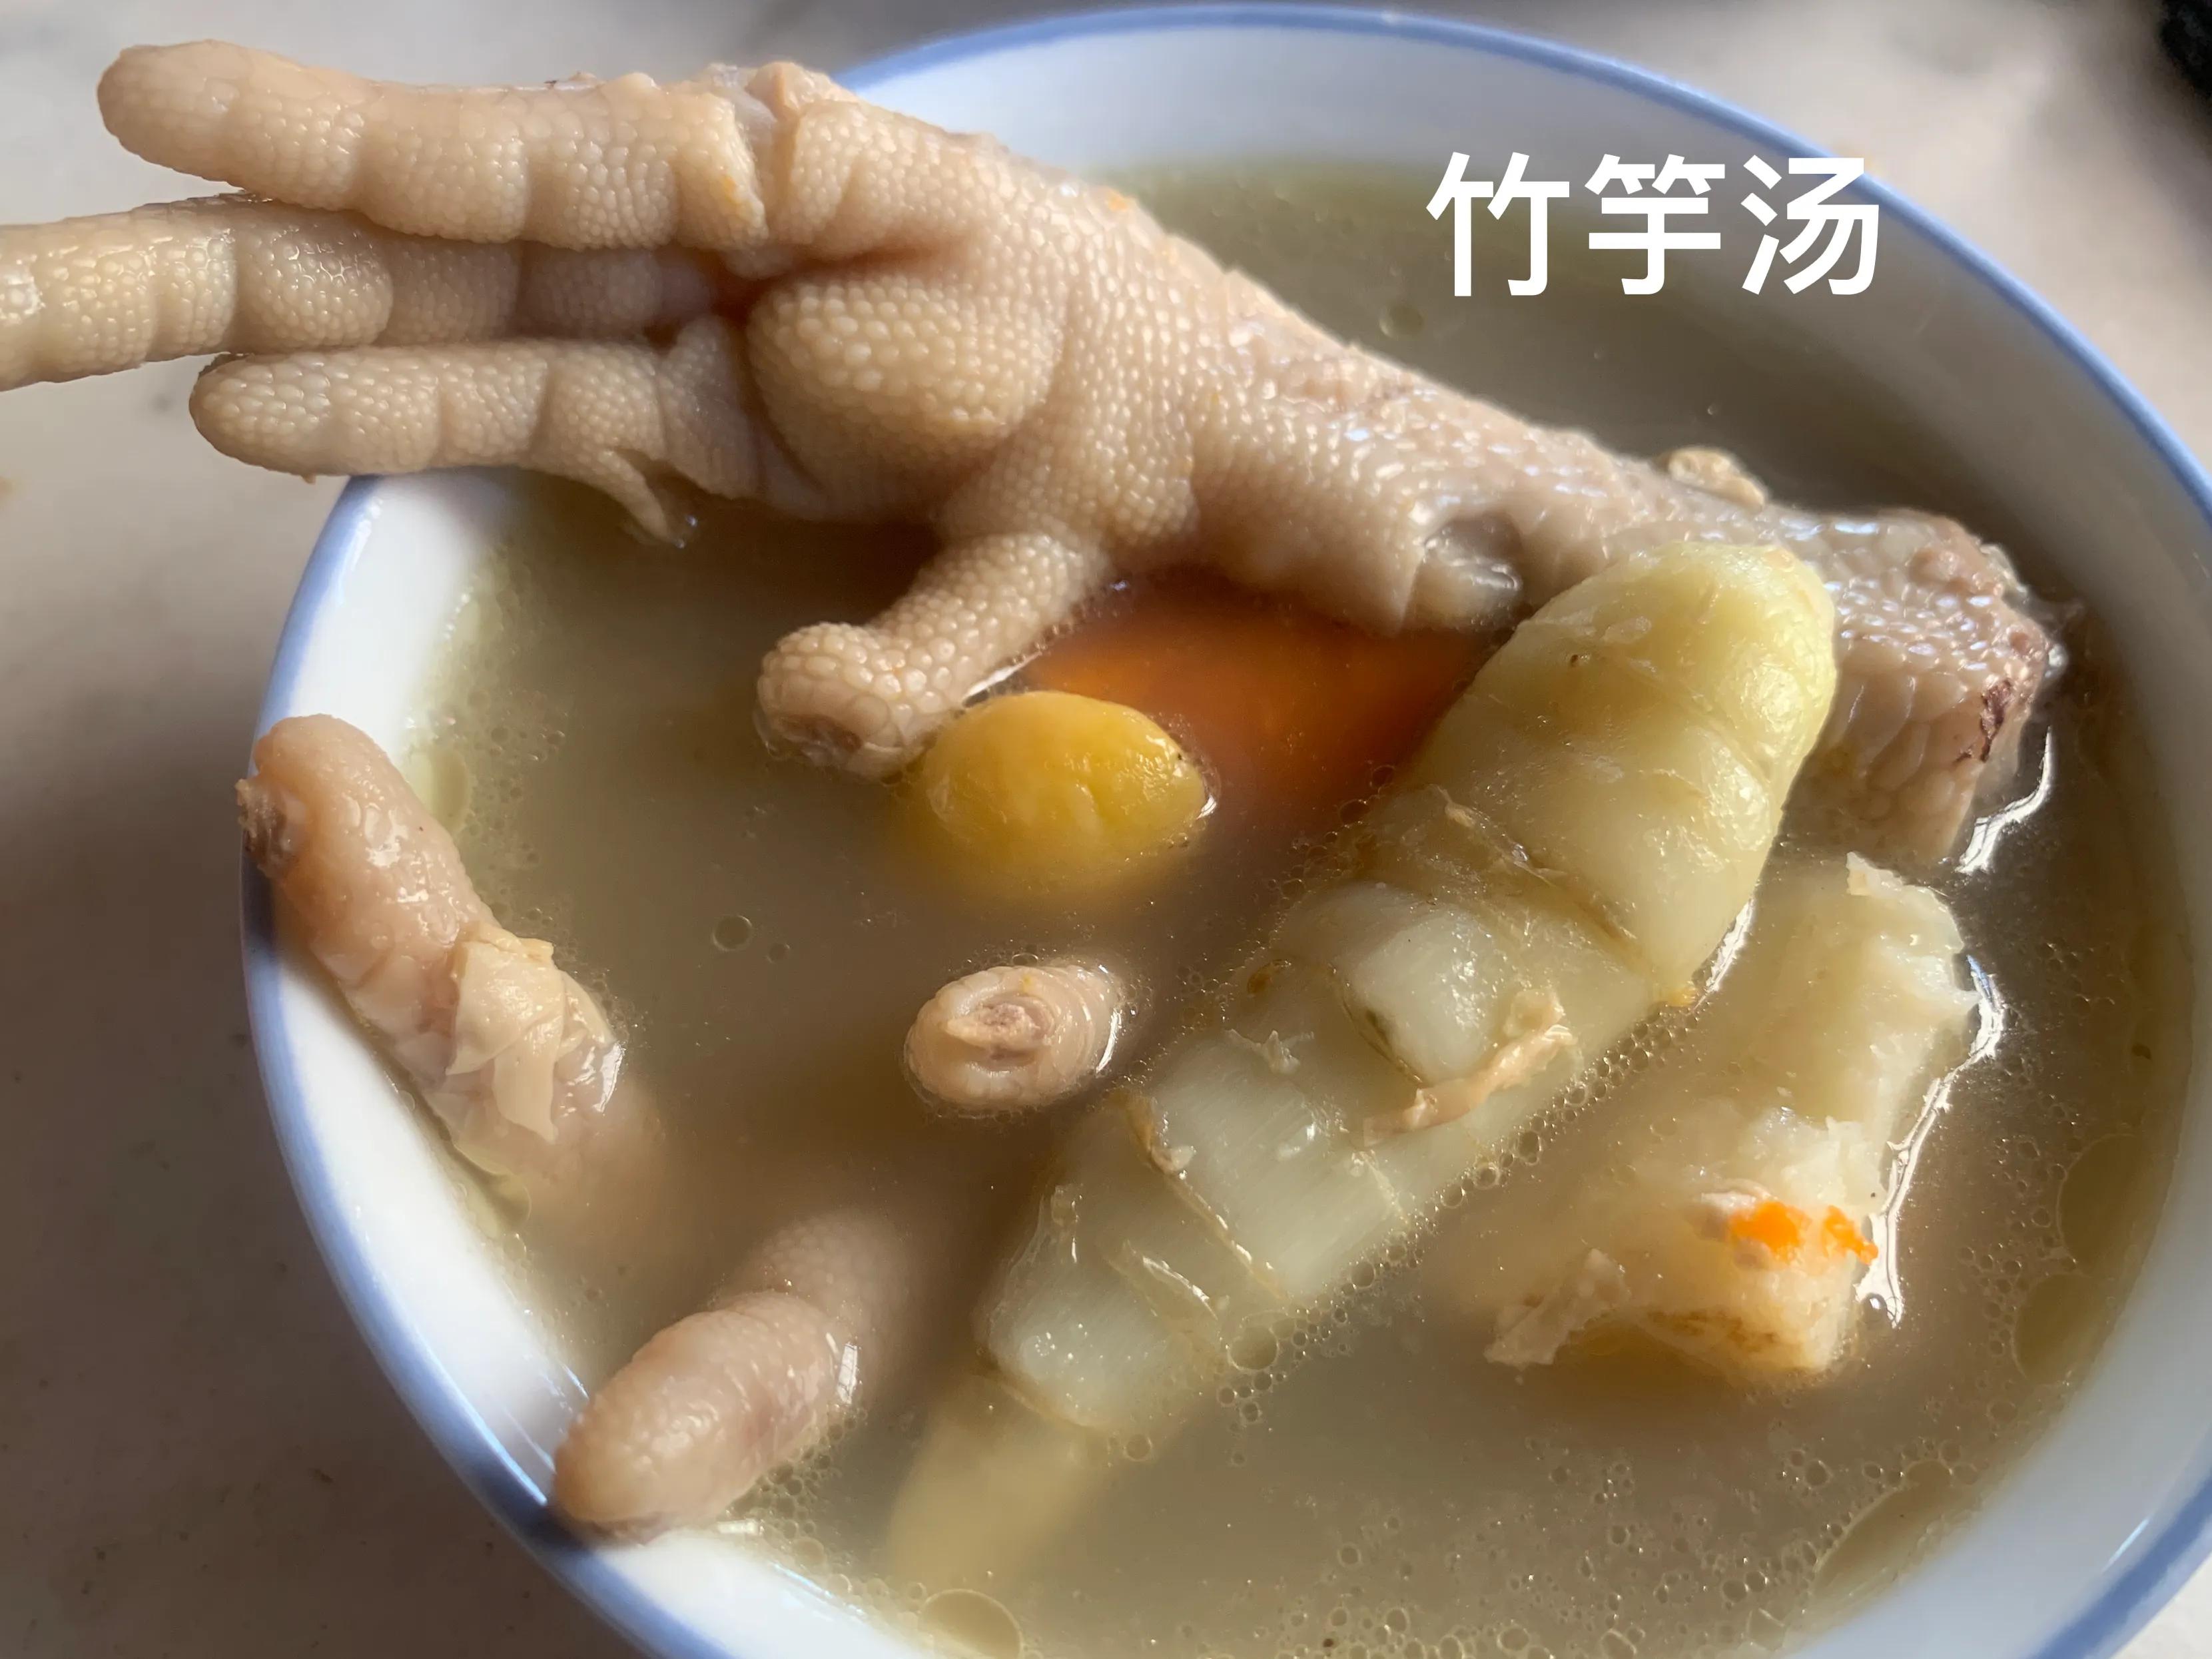 土特产品一一竹芋,又叫竹笋竽,煲汤煲粥清热去火润喉不错的食物